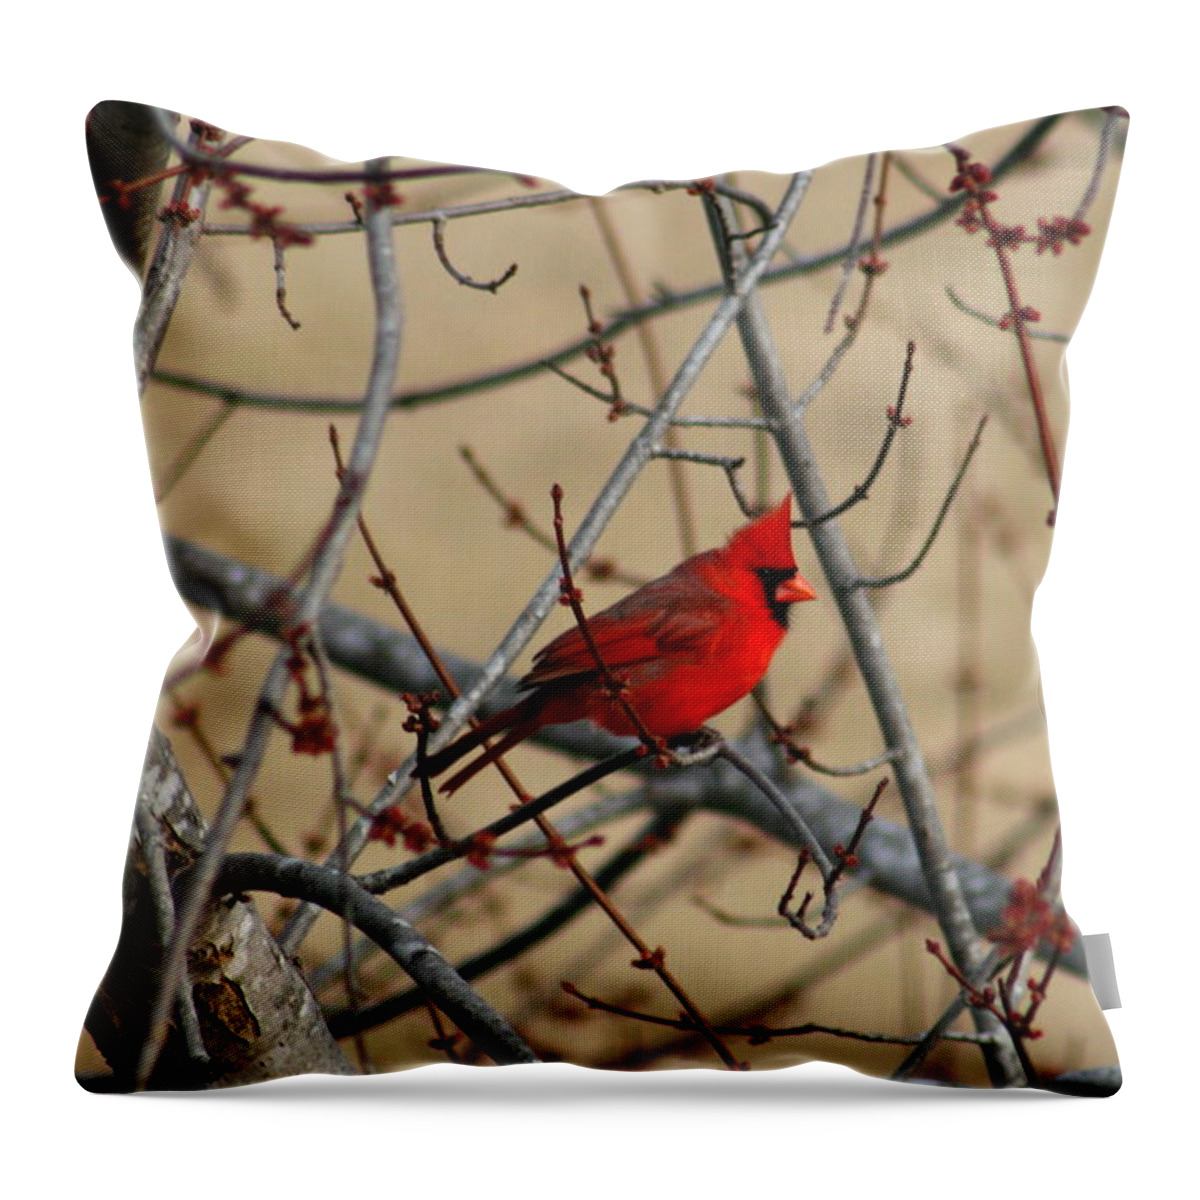 Bird Throw Pillow featuring the photograph Cardinal by David Dunham